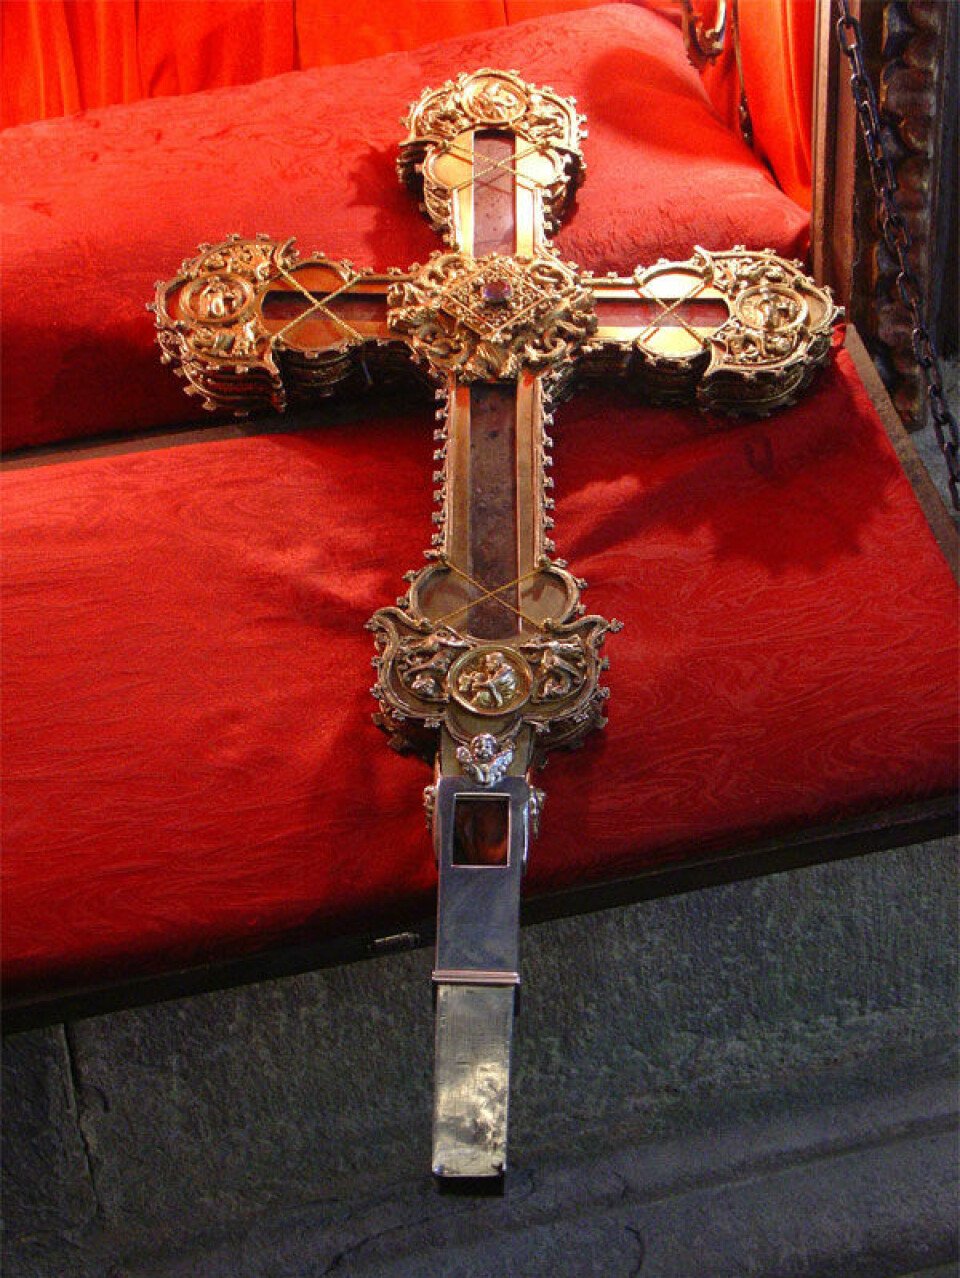 Dette korset har også påmontert to fliser fra «Det sanne kors», men er ikke det samme som skal brukes av kong Charles under kroningen.